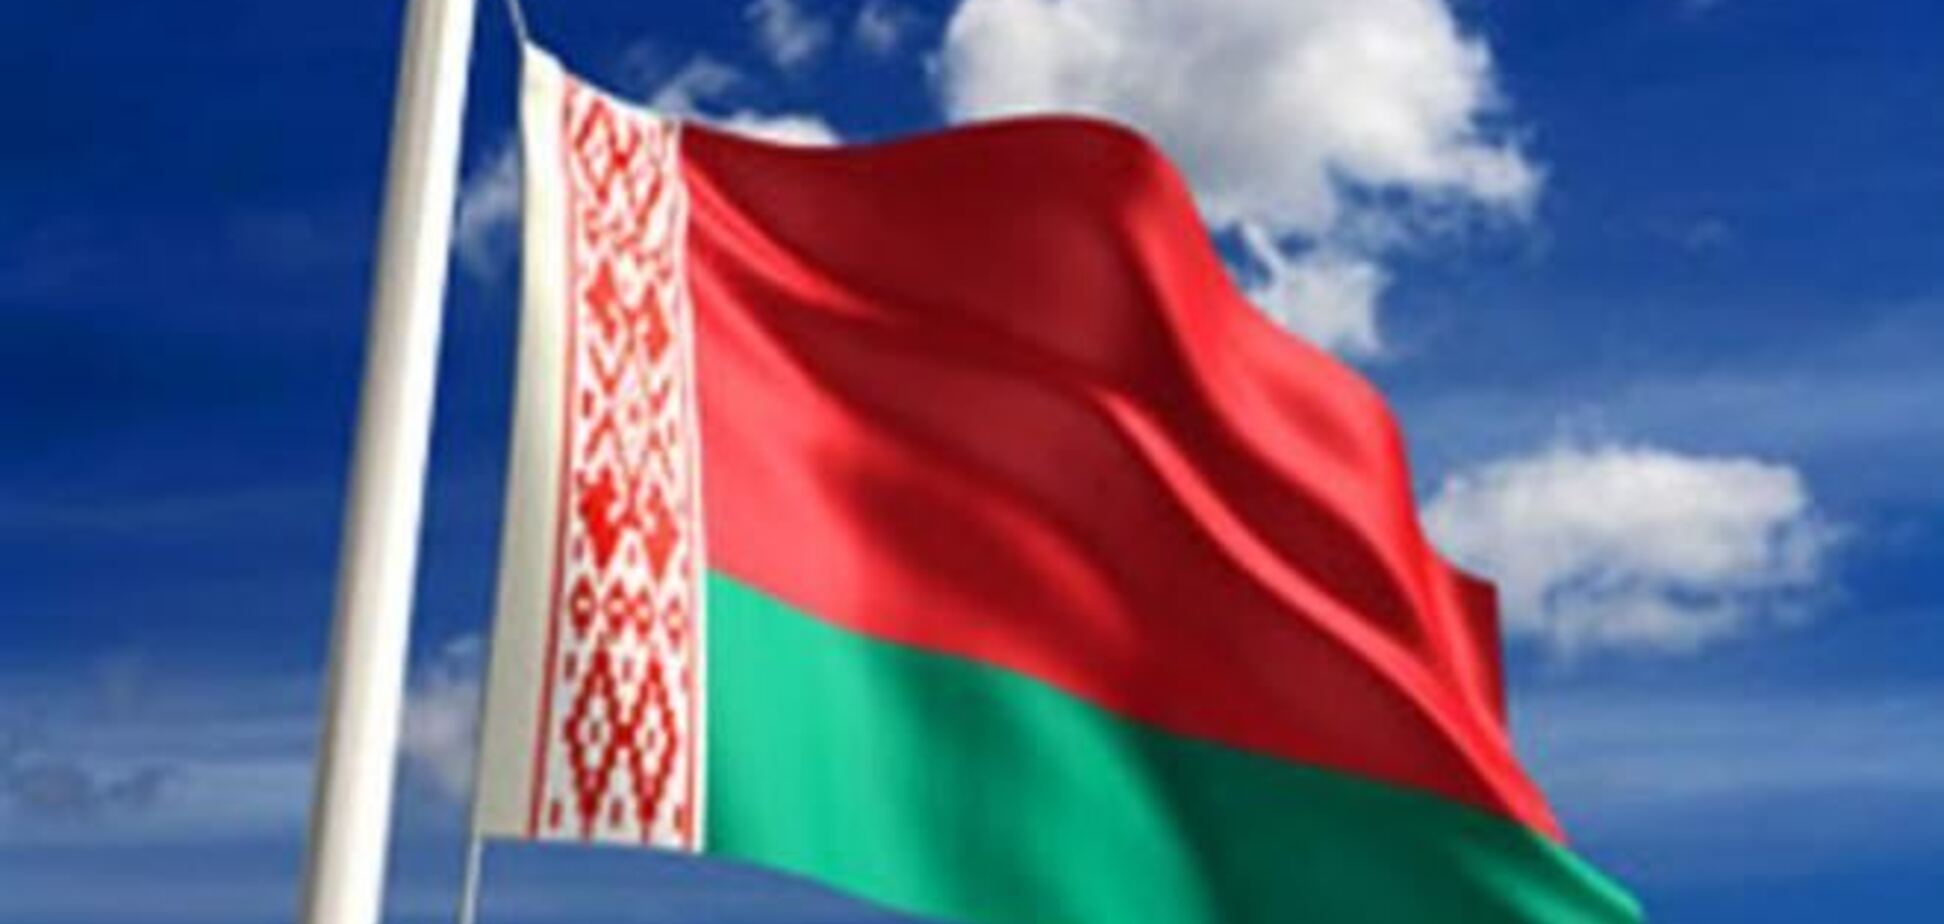 В Беларуси спецслужбы вызвали на допрос активиста Евромайдана - СМИ